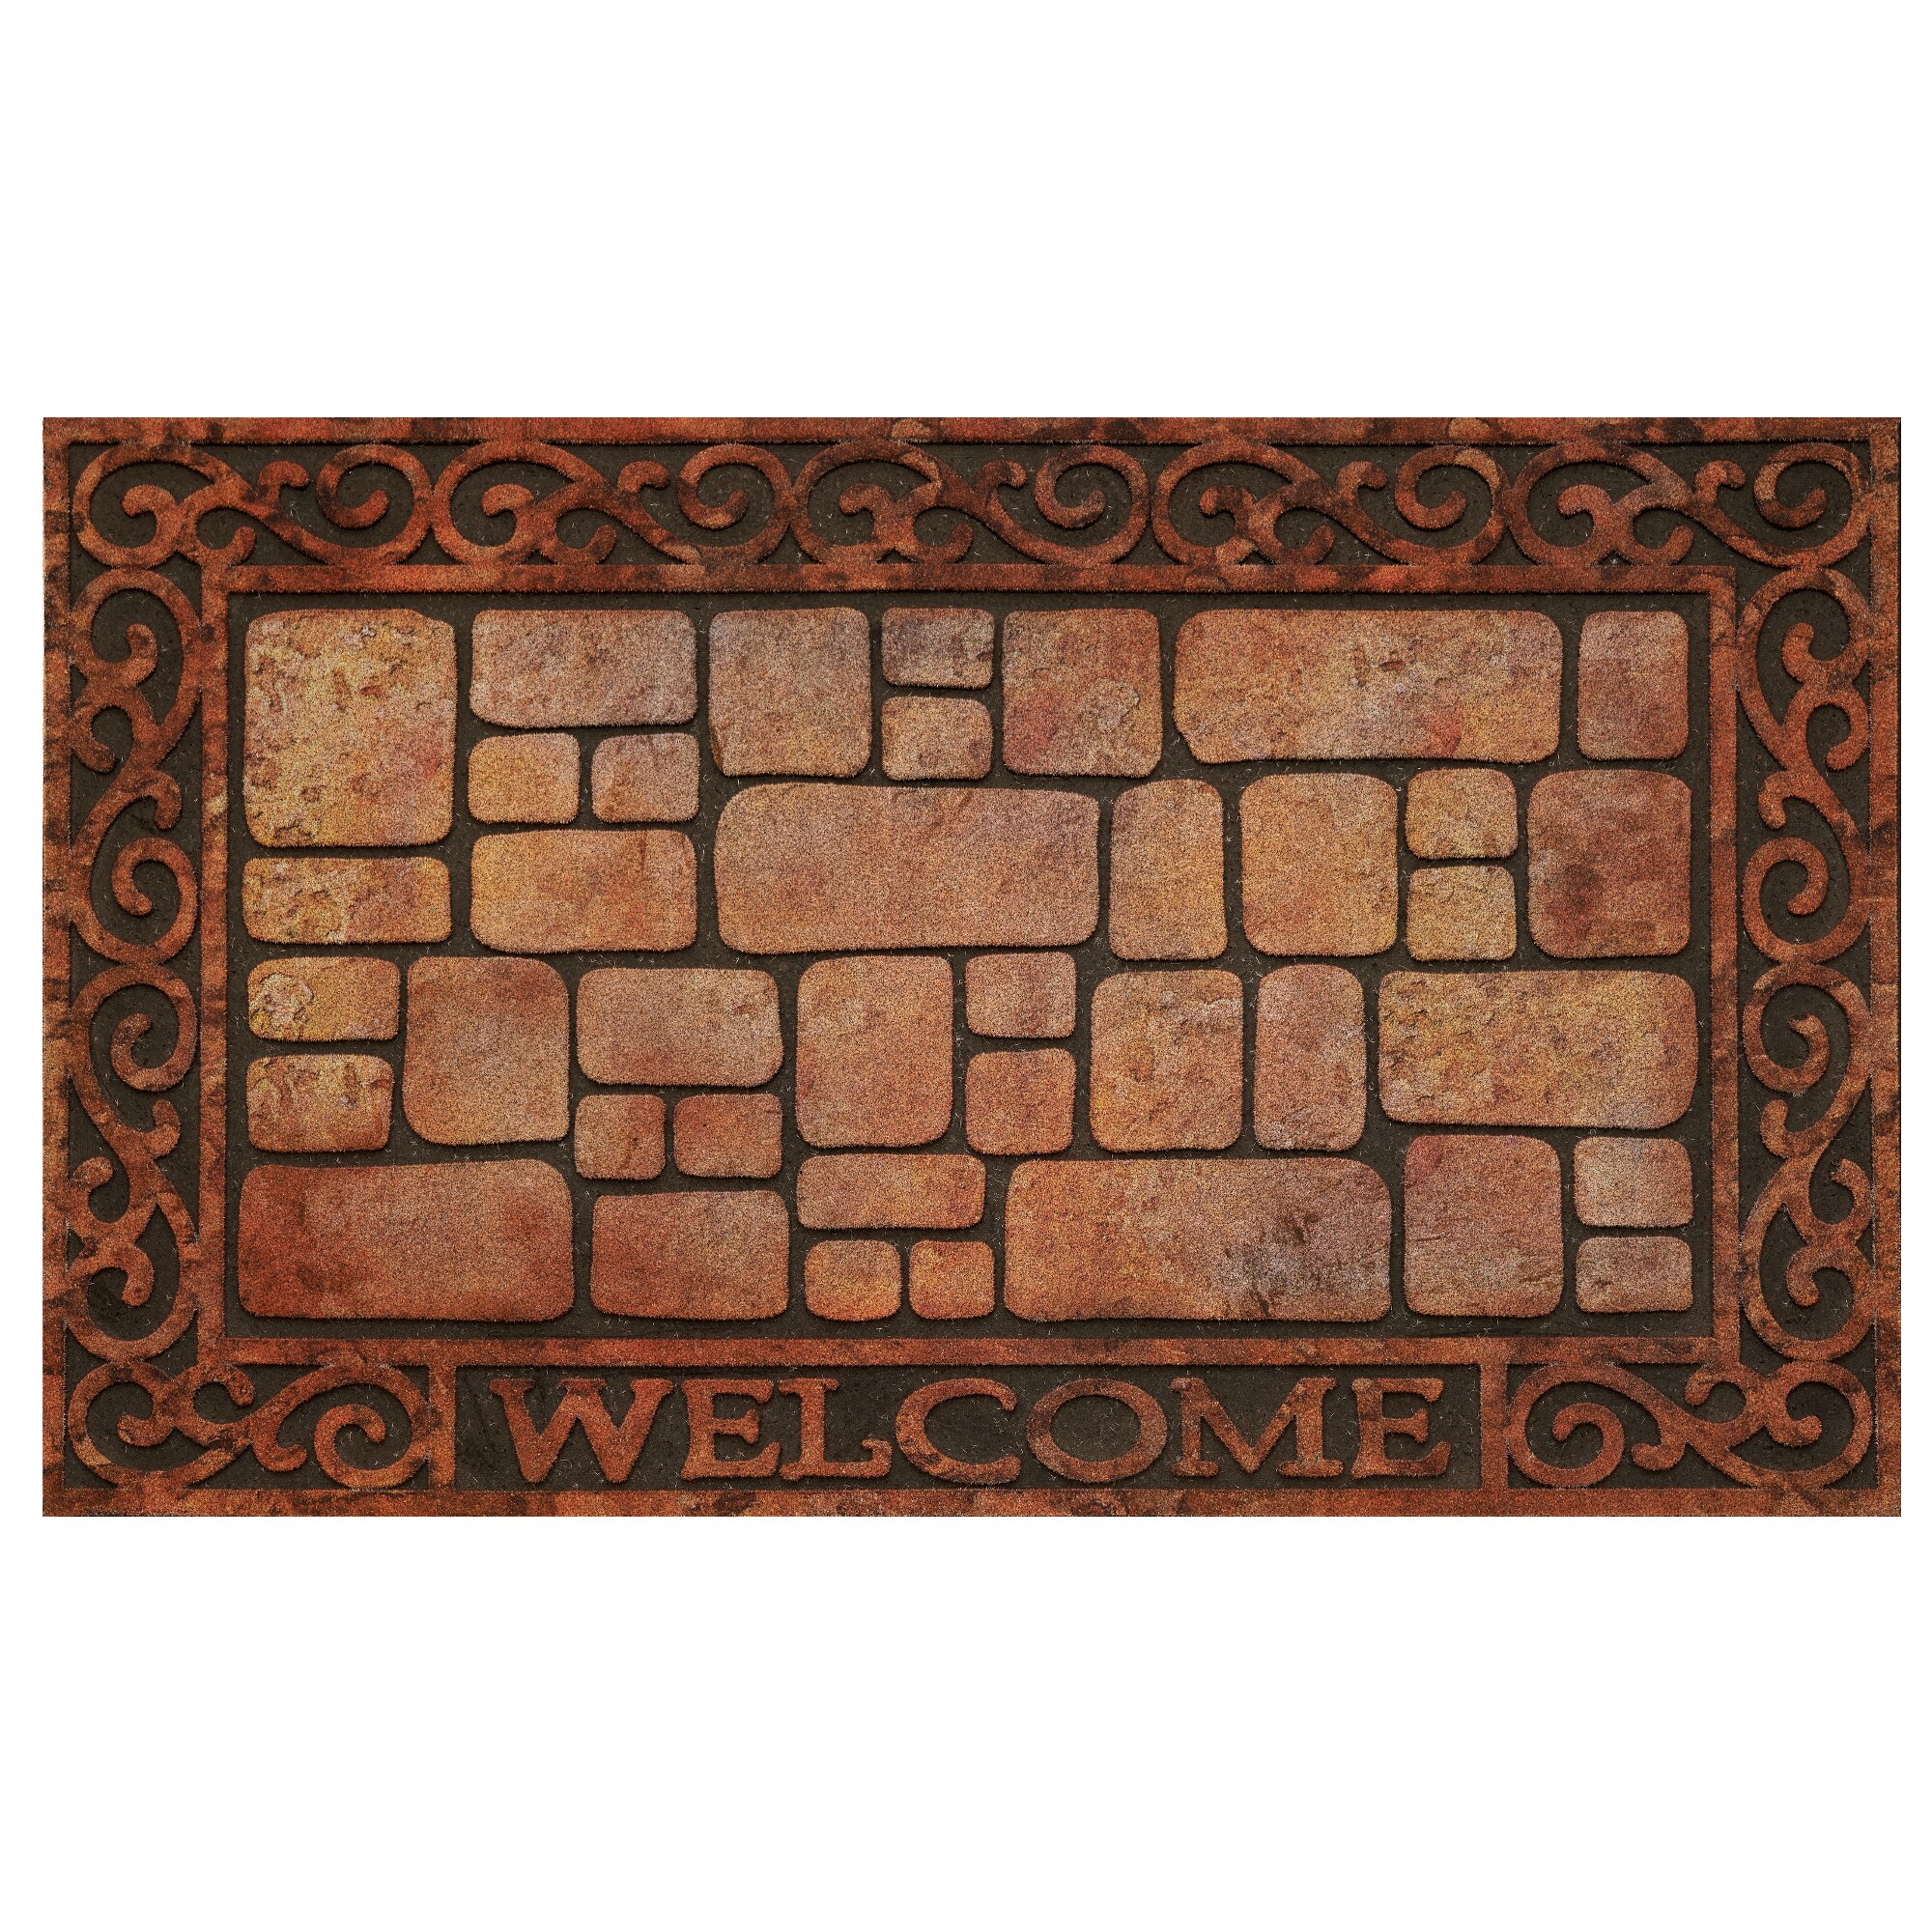 Welcome Mat Front Door Outdoor Rubber Decorative Brick Wall Floor Rug Home Decor 